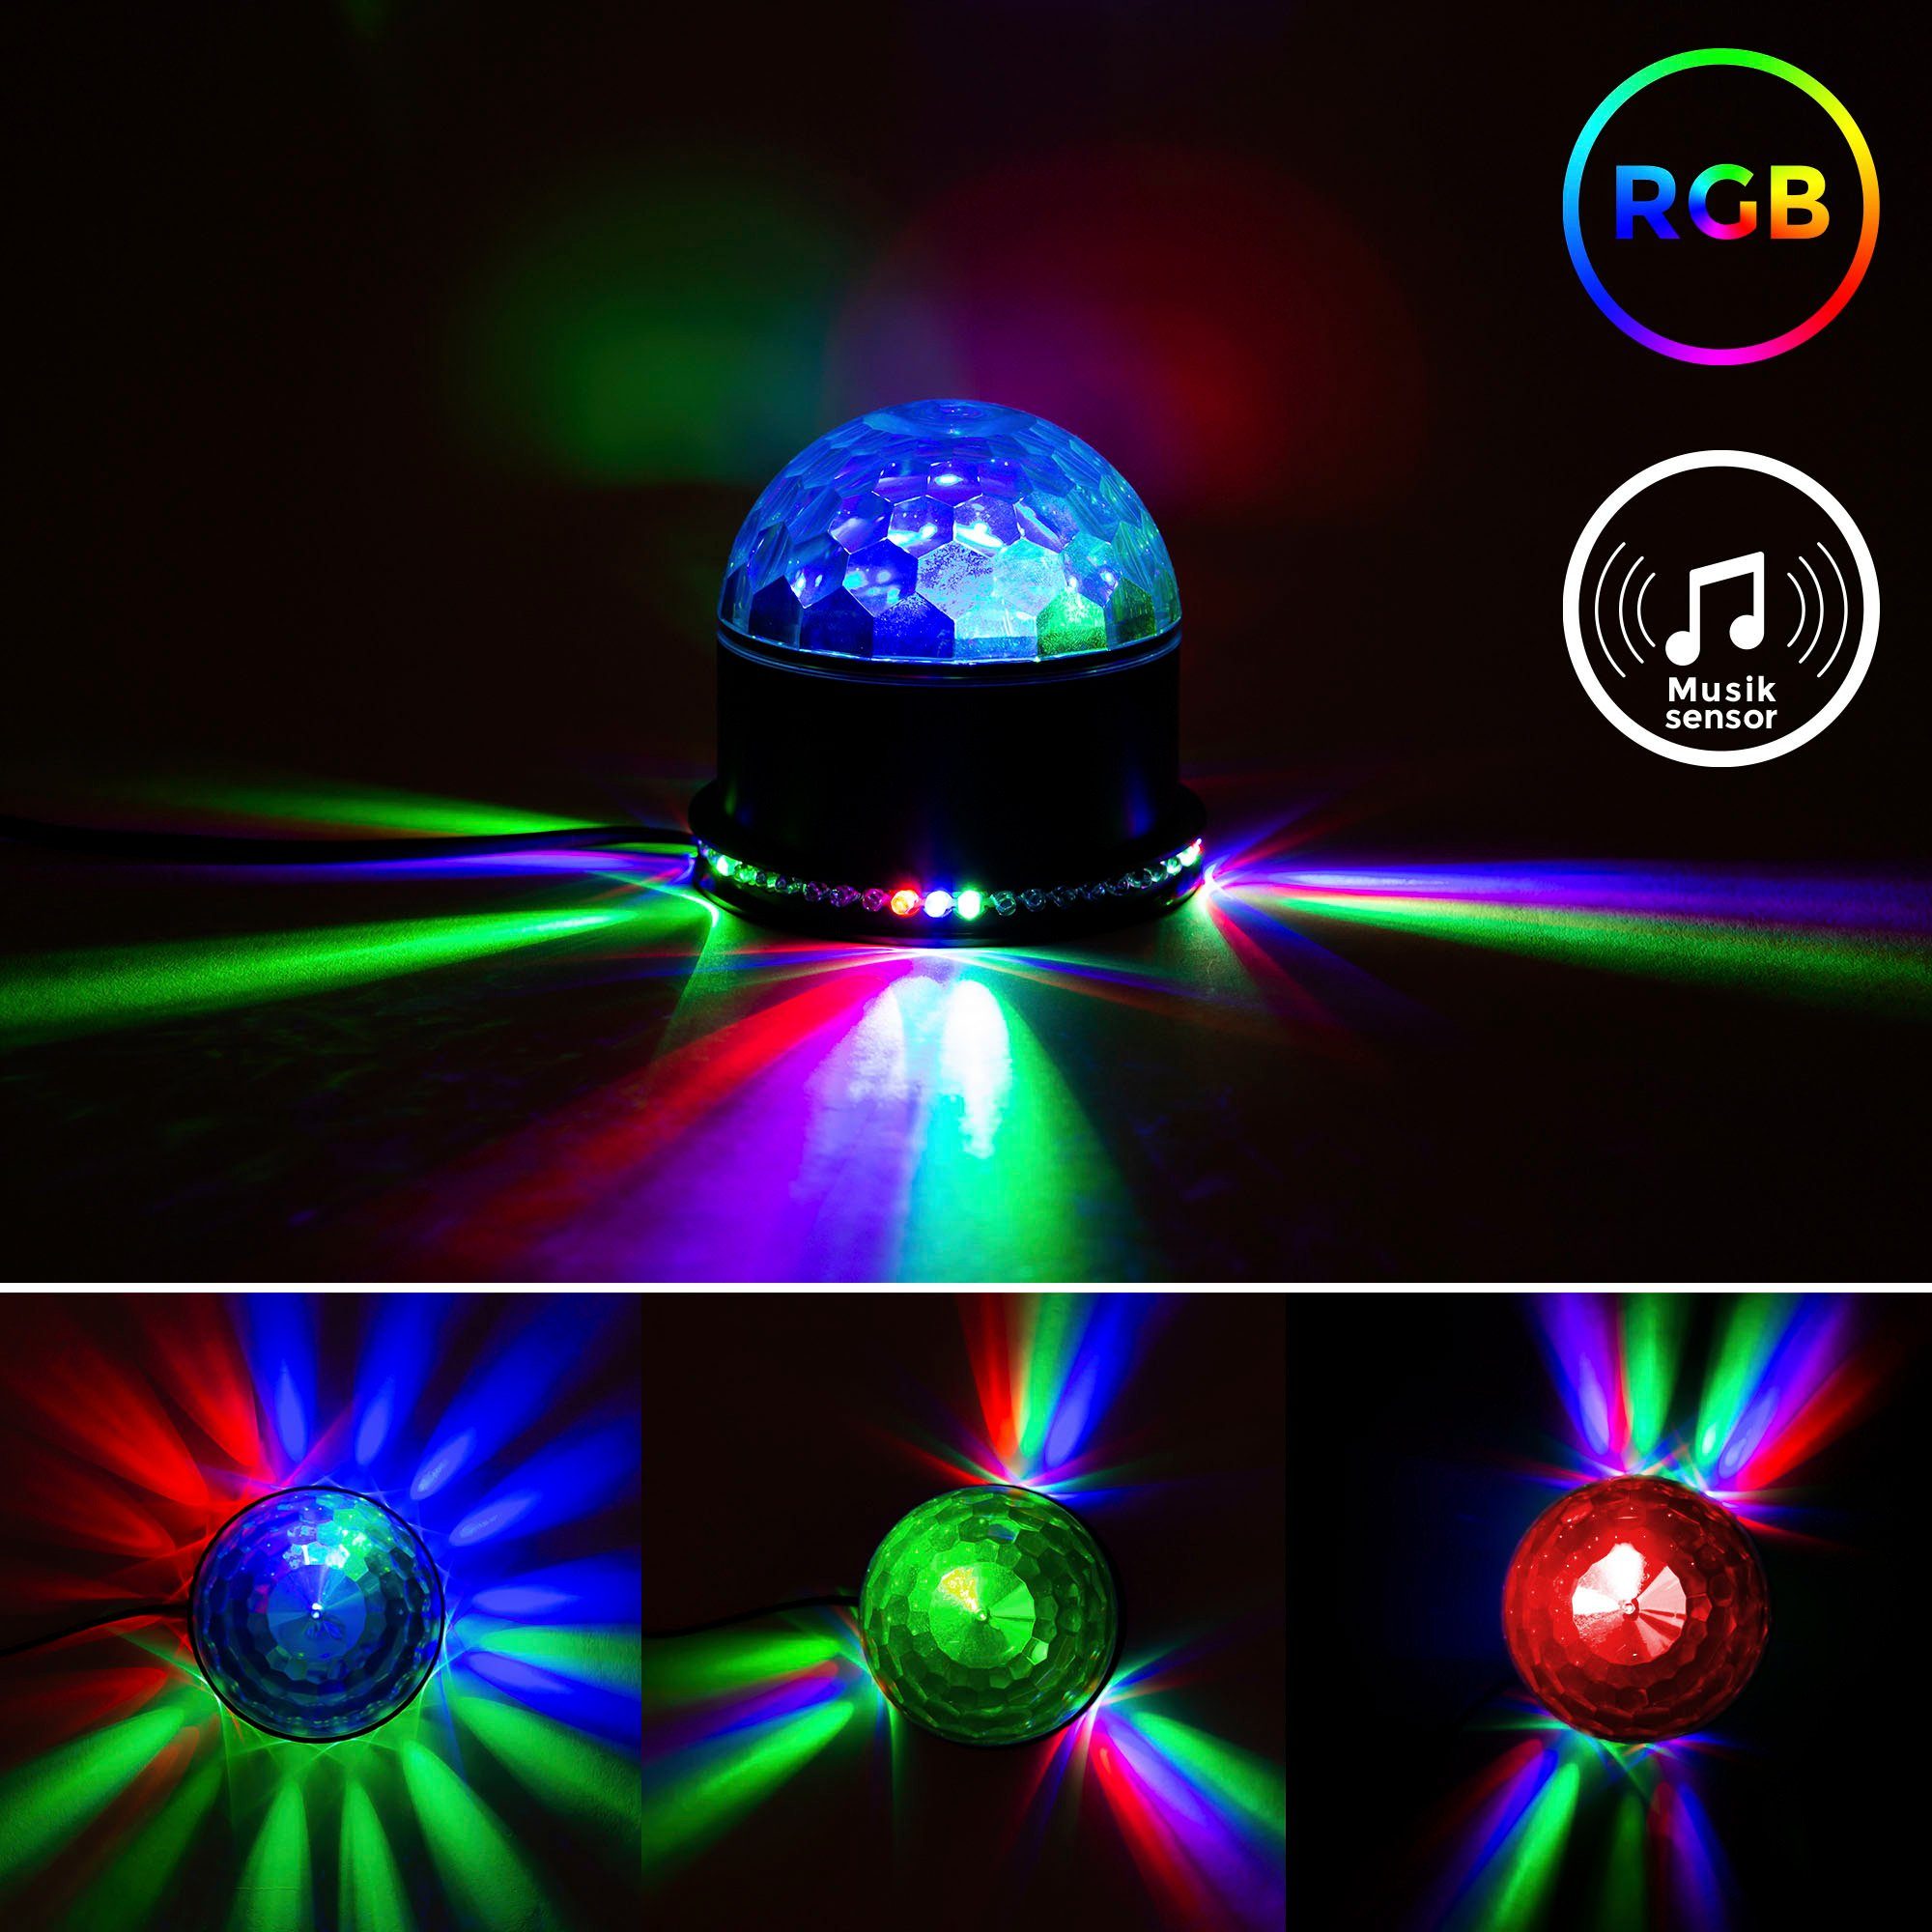 Partylicht, Musiksensor, mit RGB, LED Farbwechsel, Partyleuchte, Motivstrahler Tischlampe Discolicht, LED integriert, RGB RGB, LED BK_GD1327 fest B.K.Licht